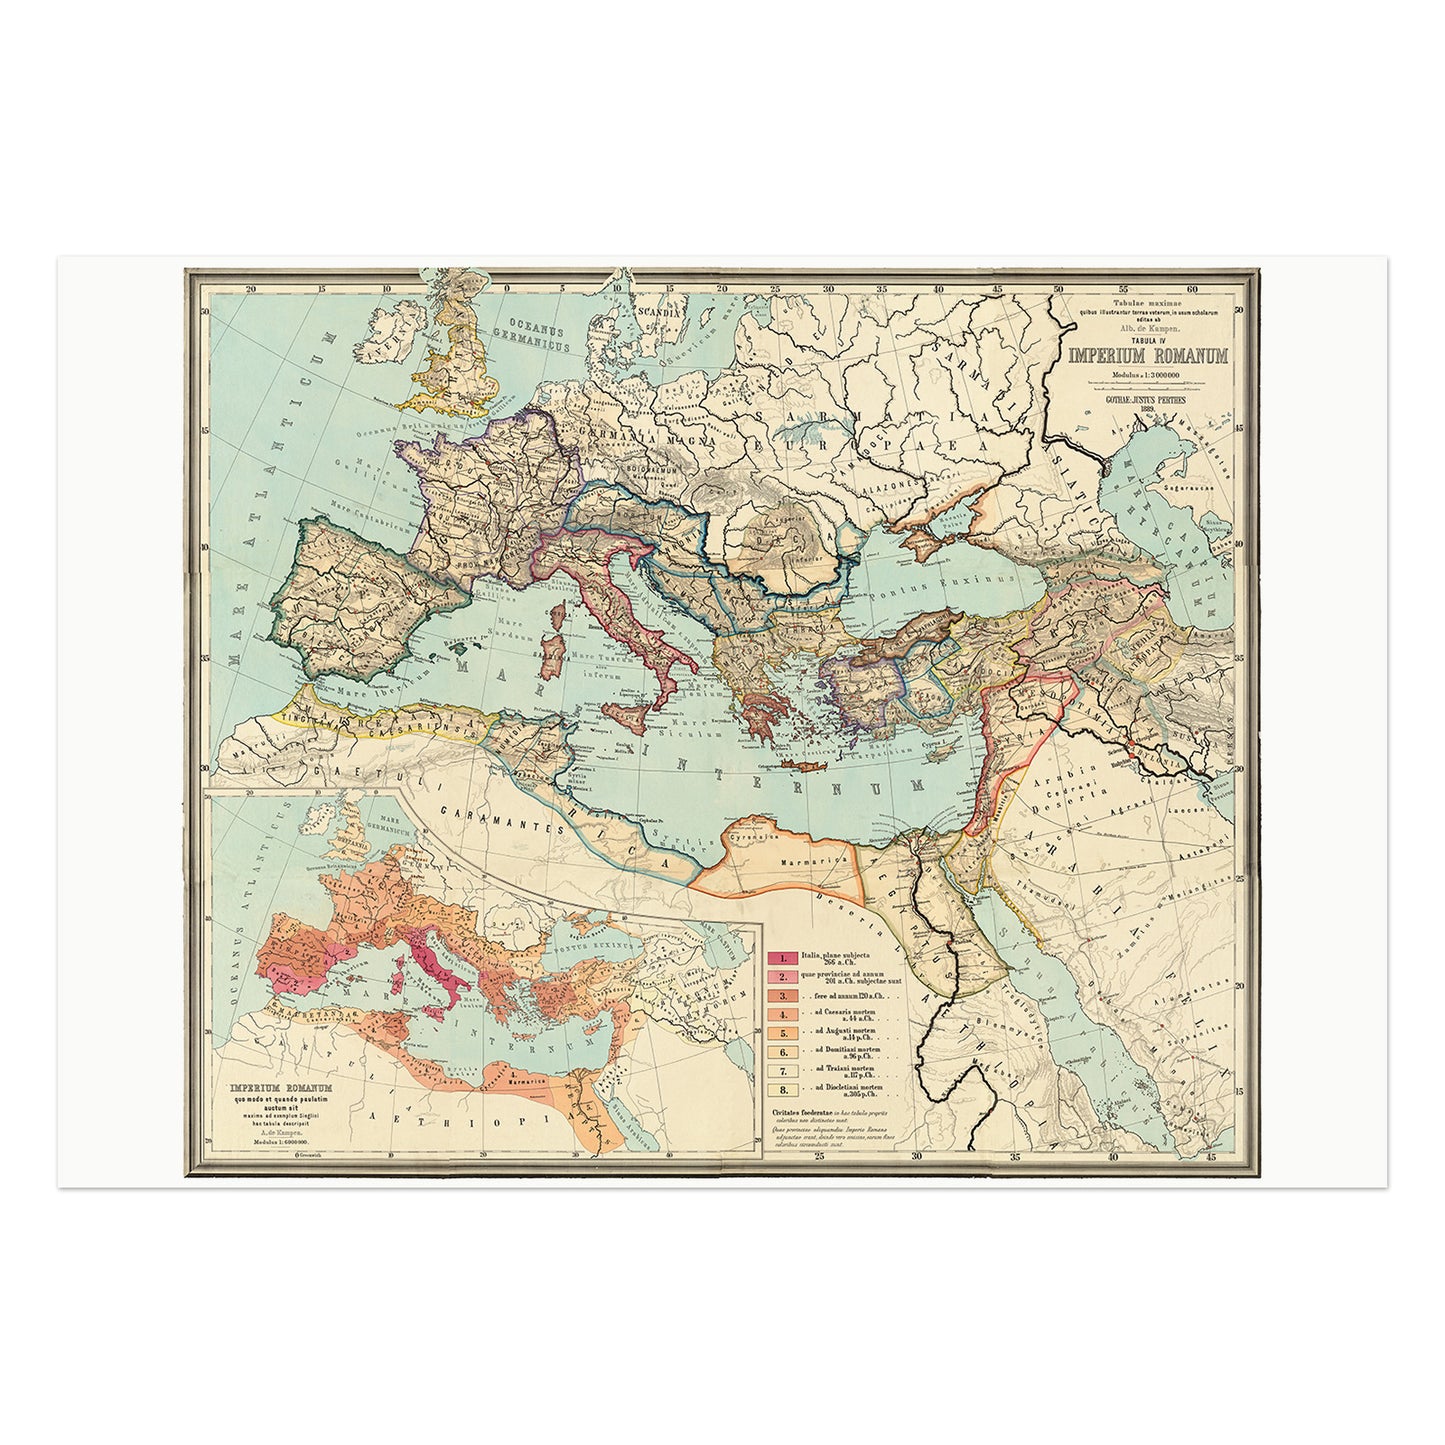 Imperium Romanum, kort over Romerriget